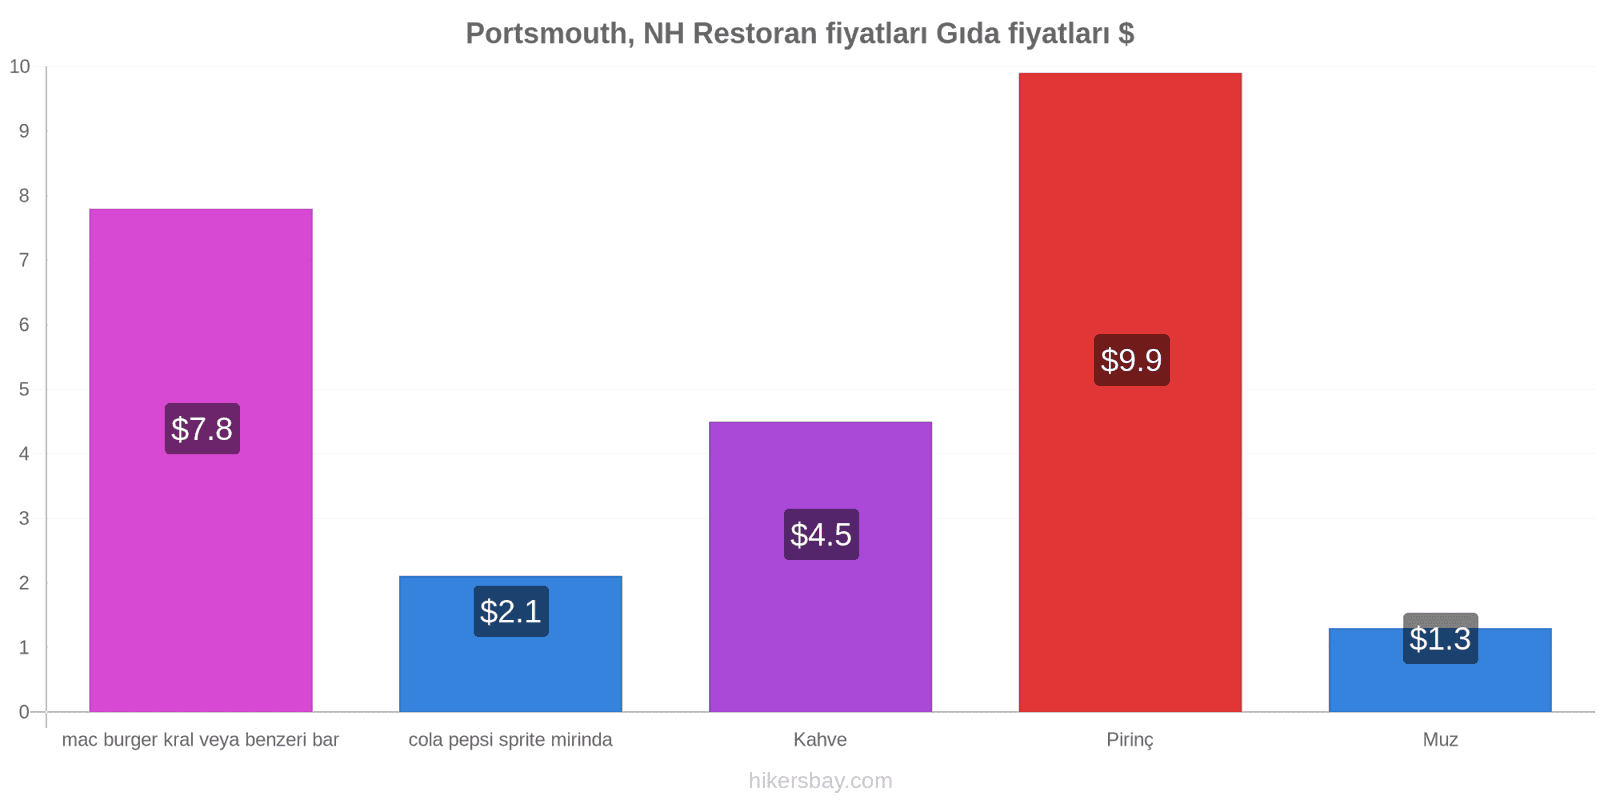 Portsmouth, NH fiyat değişiklikleri hikersbay.com